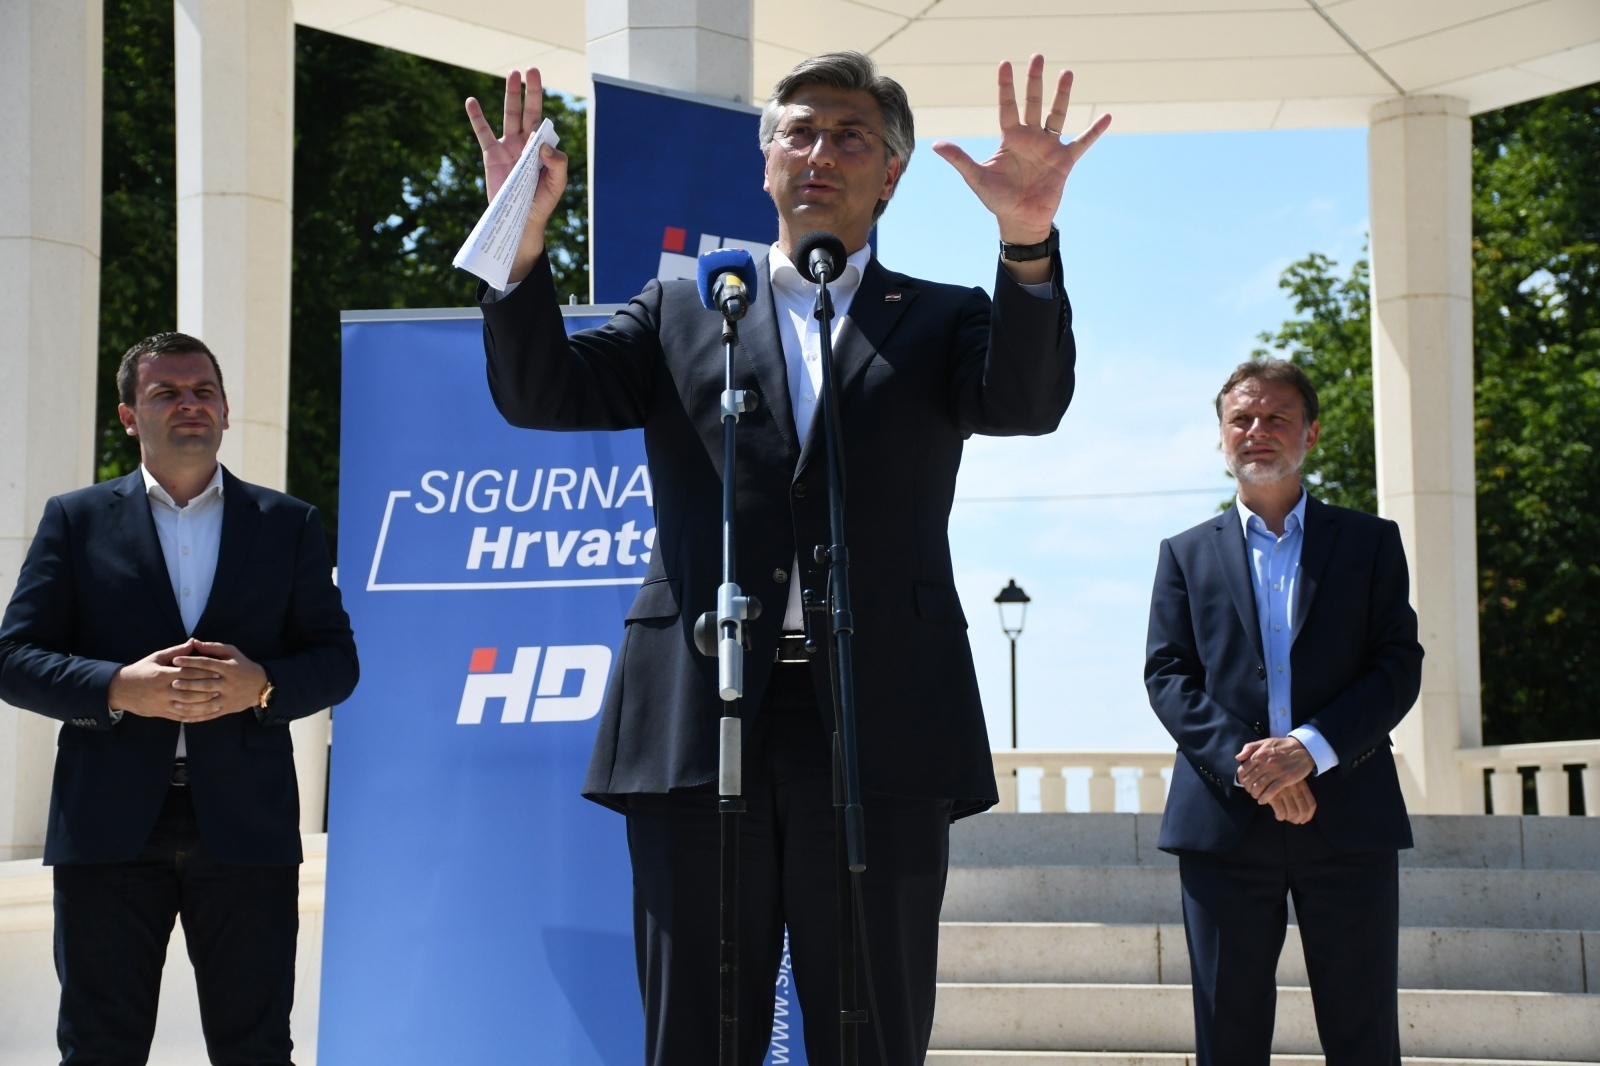 Plenković je održao govor ispred glazbenog paviljona u središtu Trga Eugena Kvaternika, dok su iza njega stajali bjelovarski gradonačelnik Dario Hrebak i predsjednik sabora Gordan Jandroković.